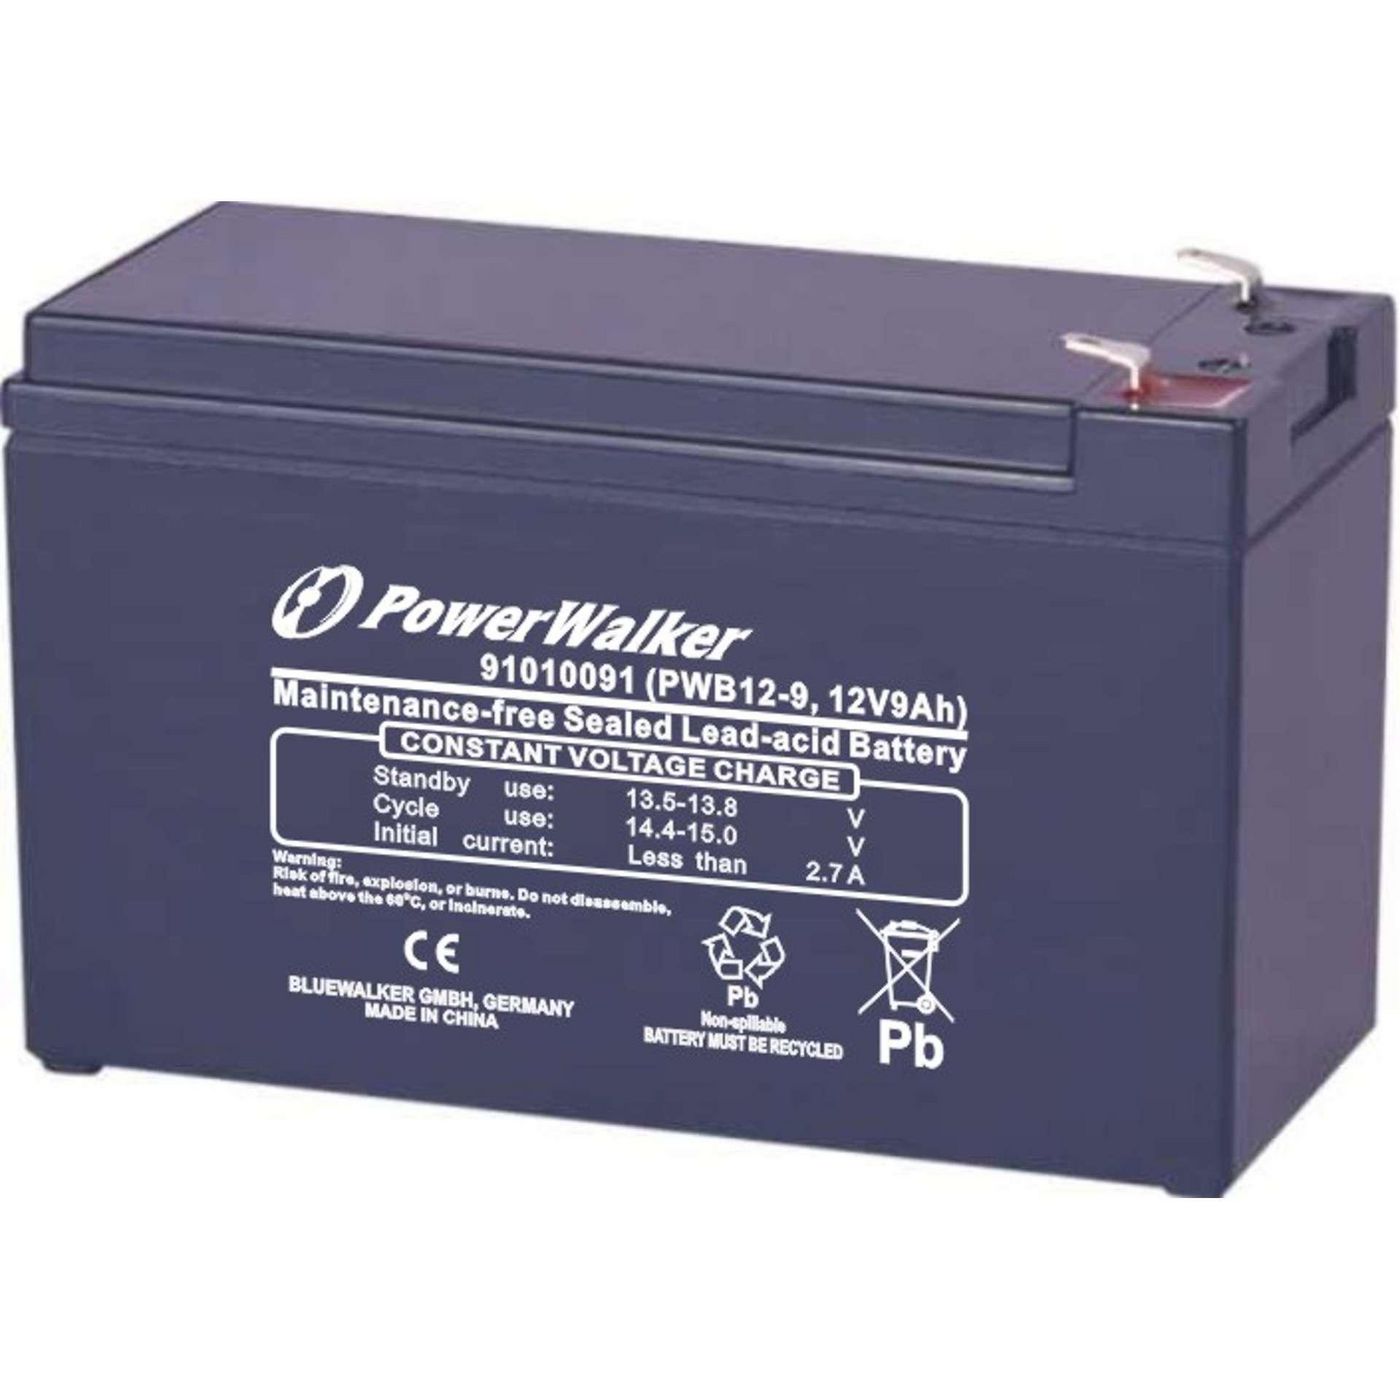 PowerWalker 91010091 Battery 12V9Ah PWB12-9 